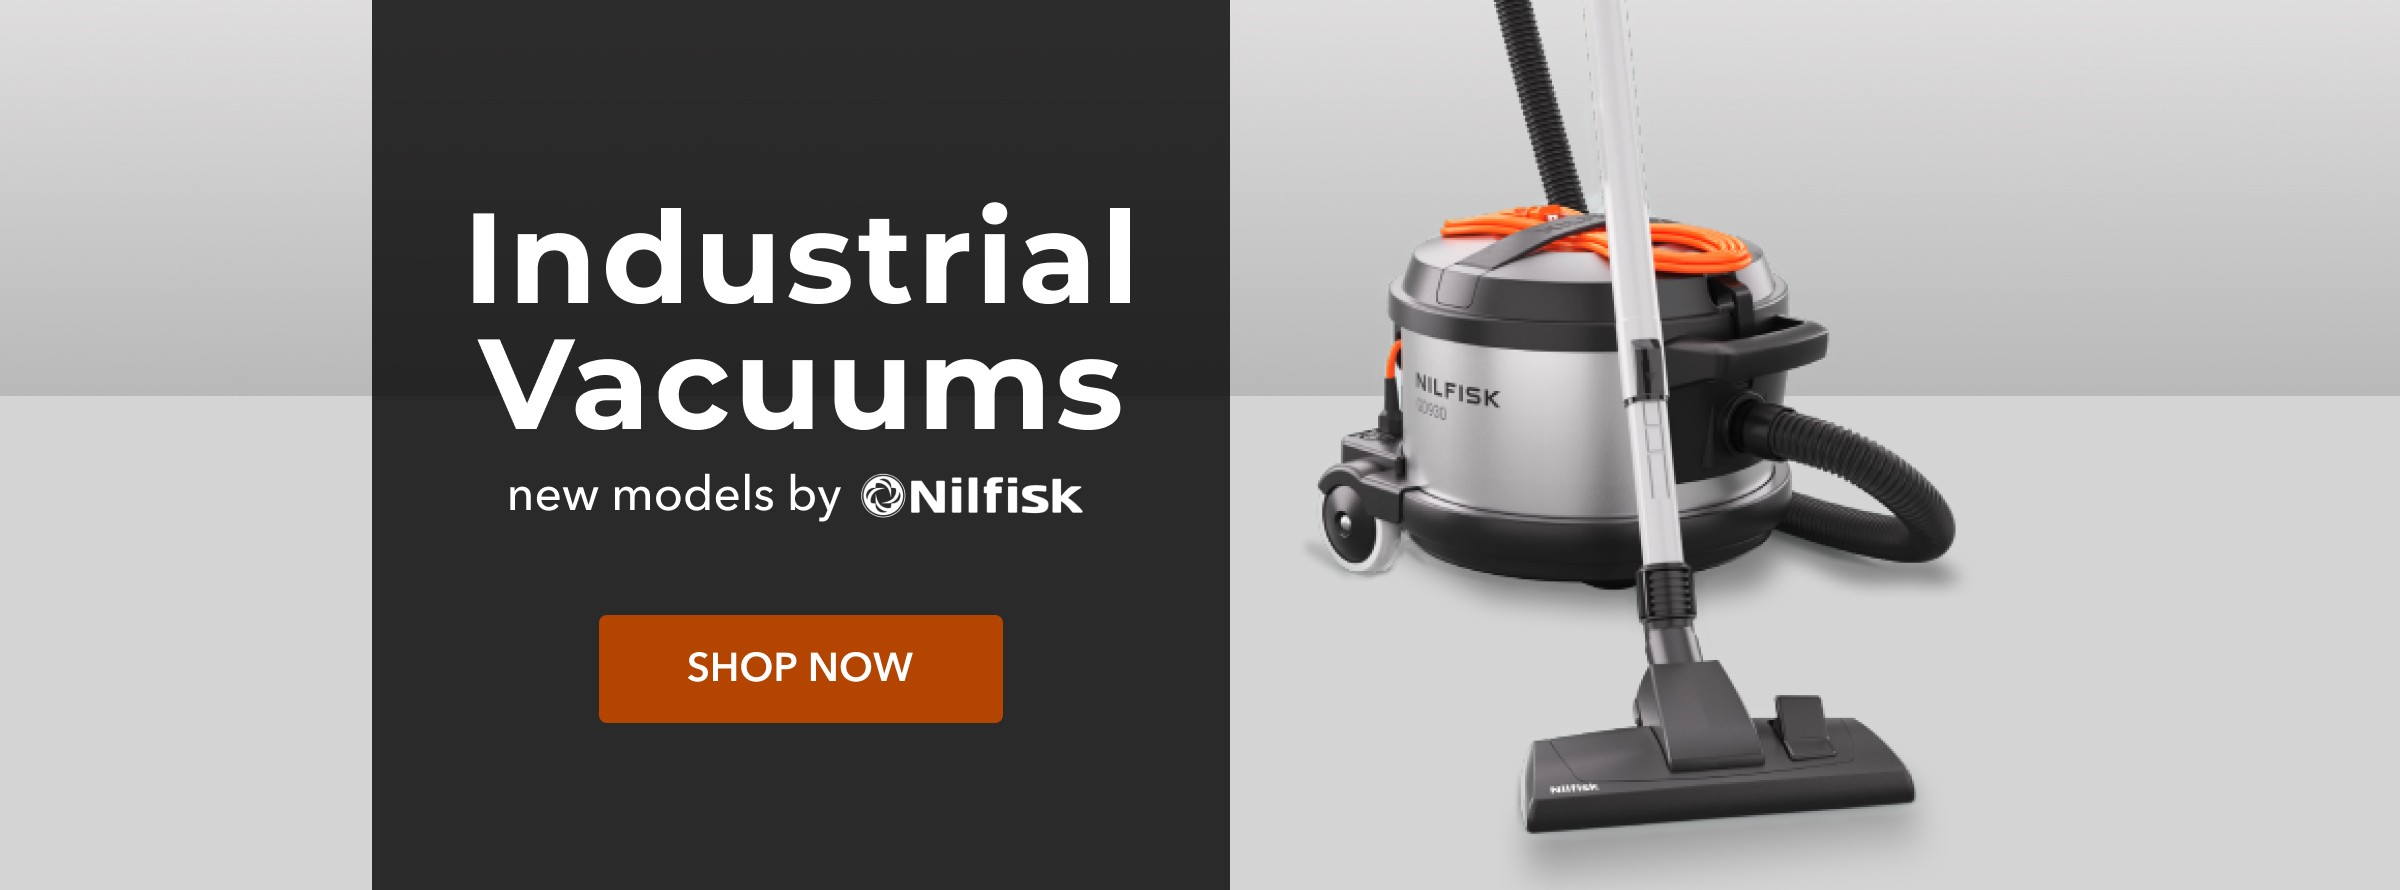 Industrial Vacuums by Nilfisk